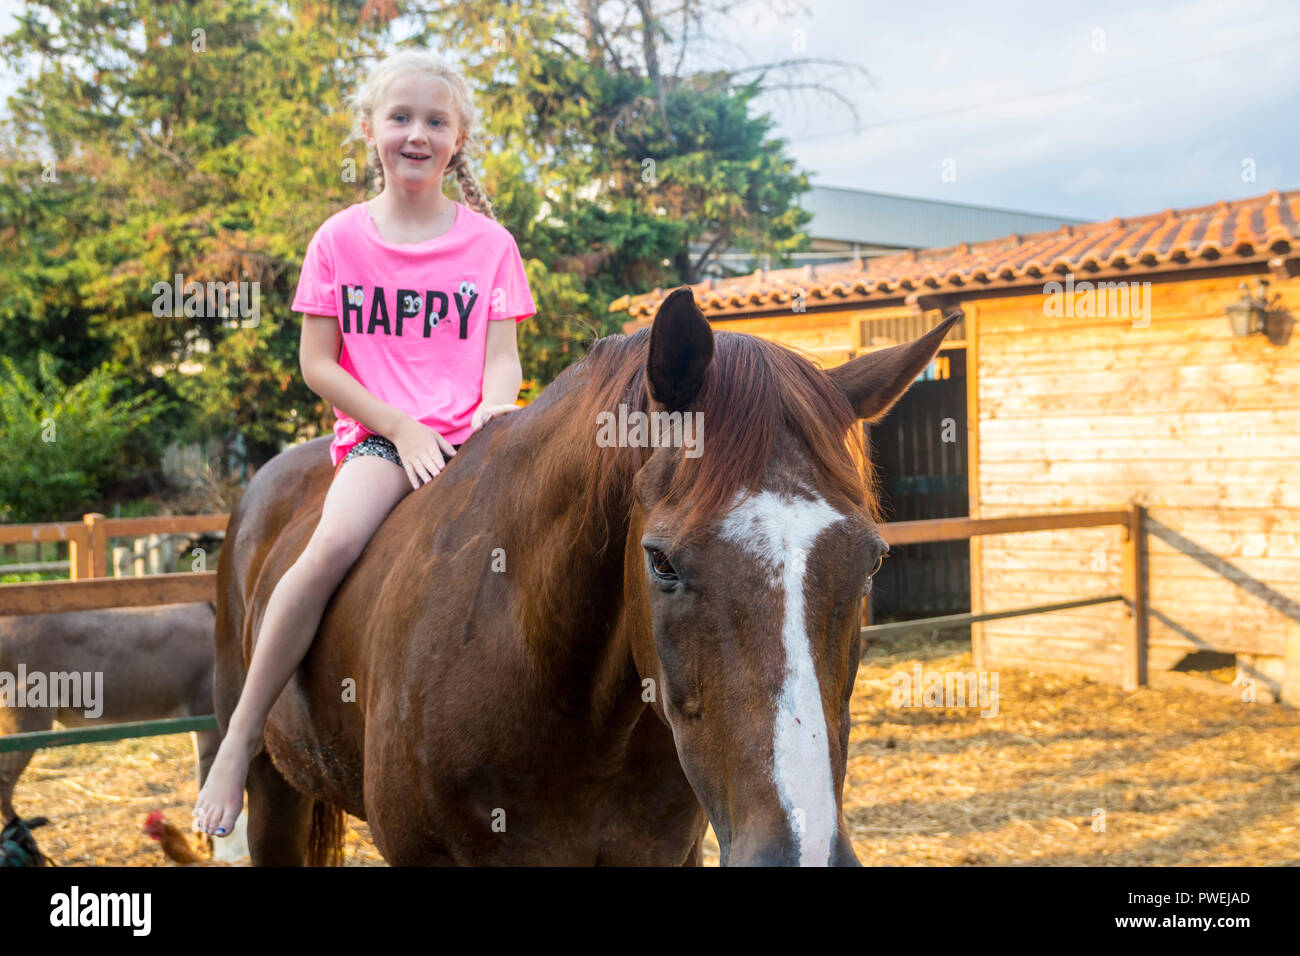 Kind, Kind Kinder Mädchen sitzen auf dem Pferd, Pferd Freude glücklich Konzept, Bauernhof Tier Tiere braun Hengst, ländliche Konzept, Landwirtschaft land, Italien Stockfoto